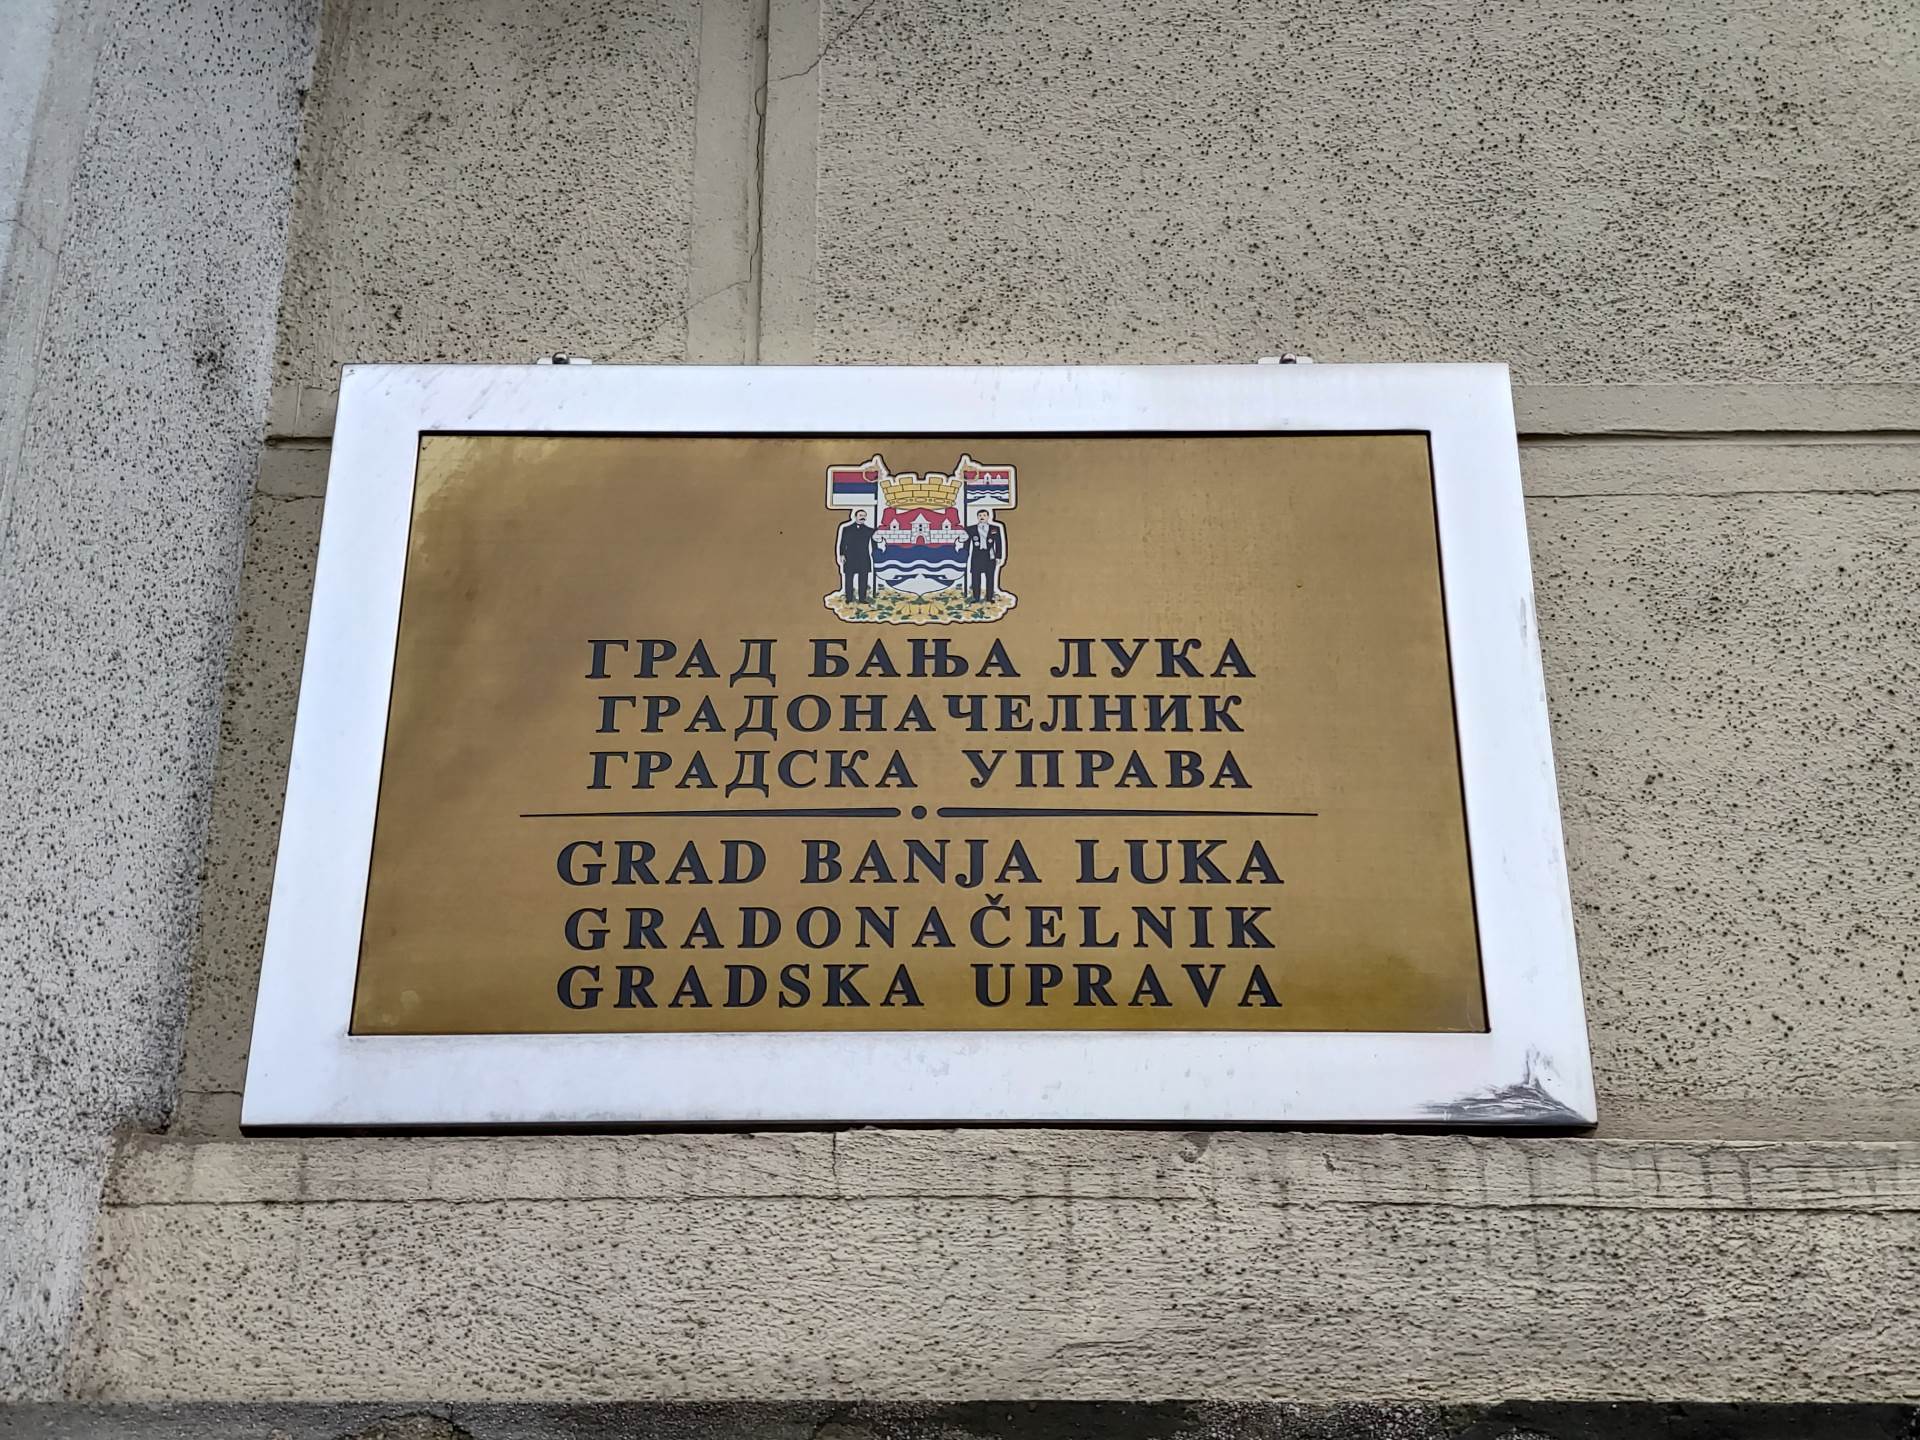  Stanić: Stanivuković ne zna kako izgleda fakultetska diploma 